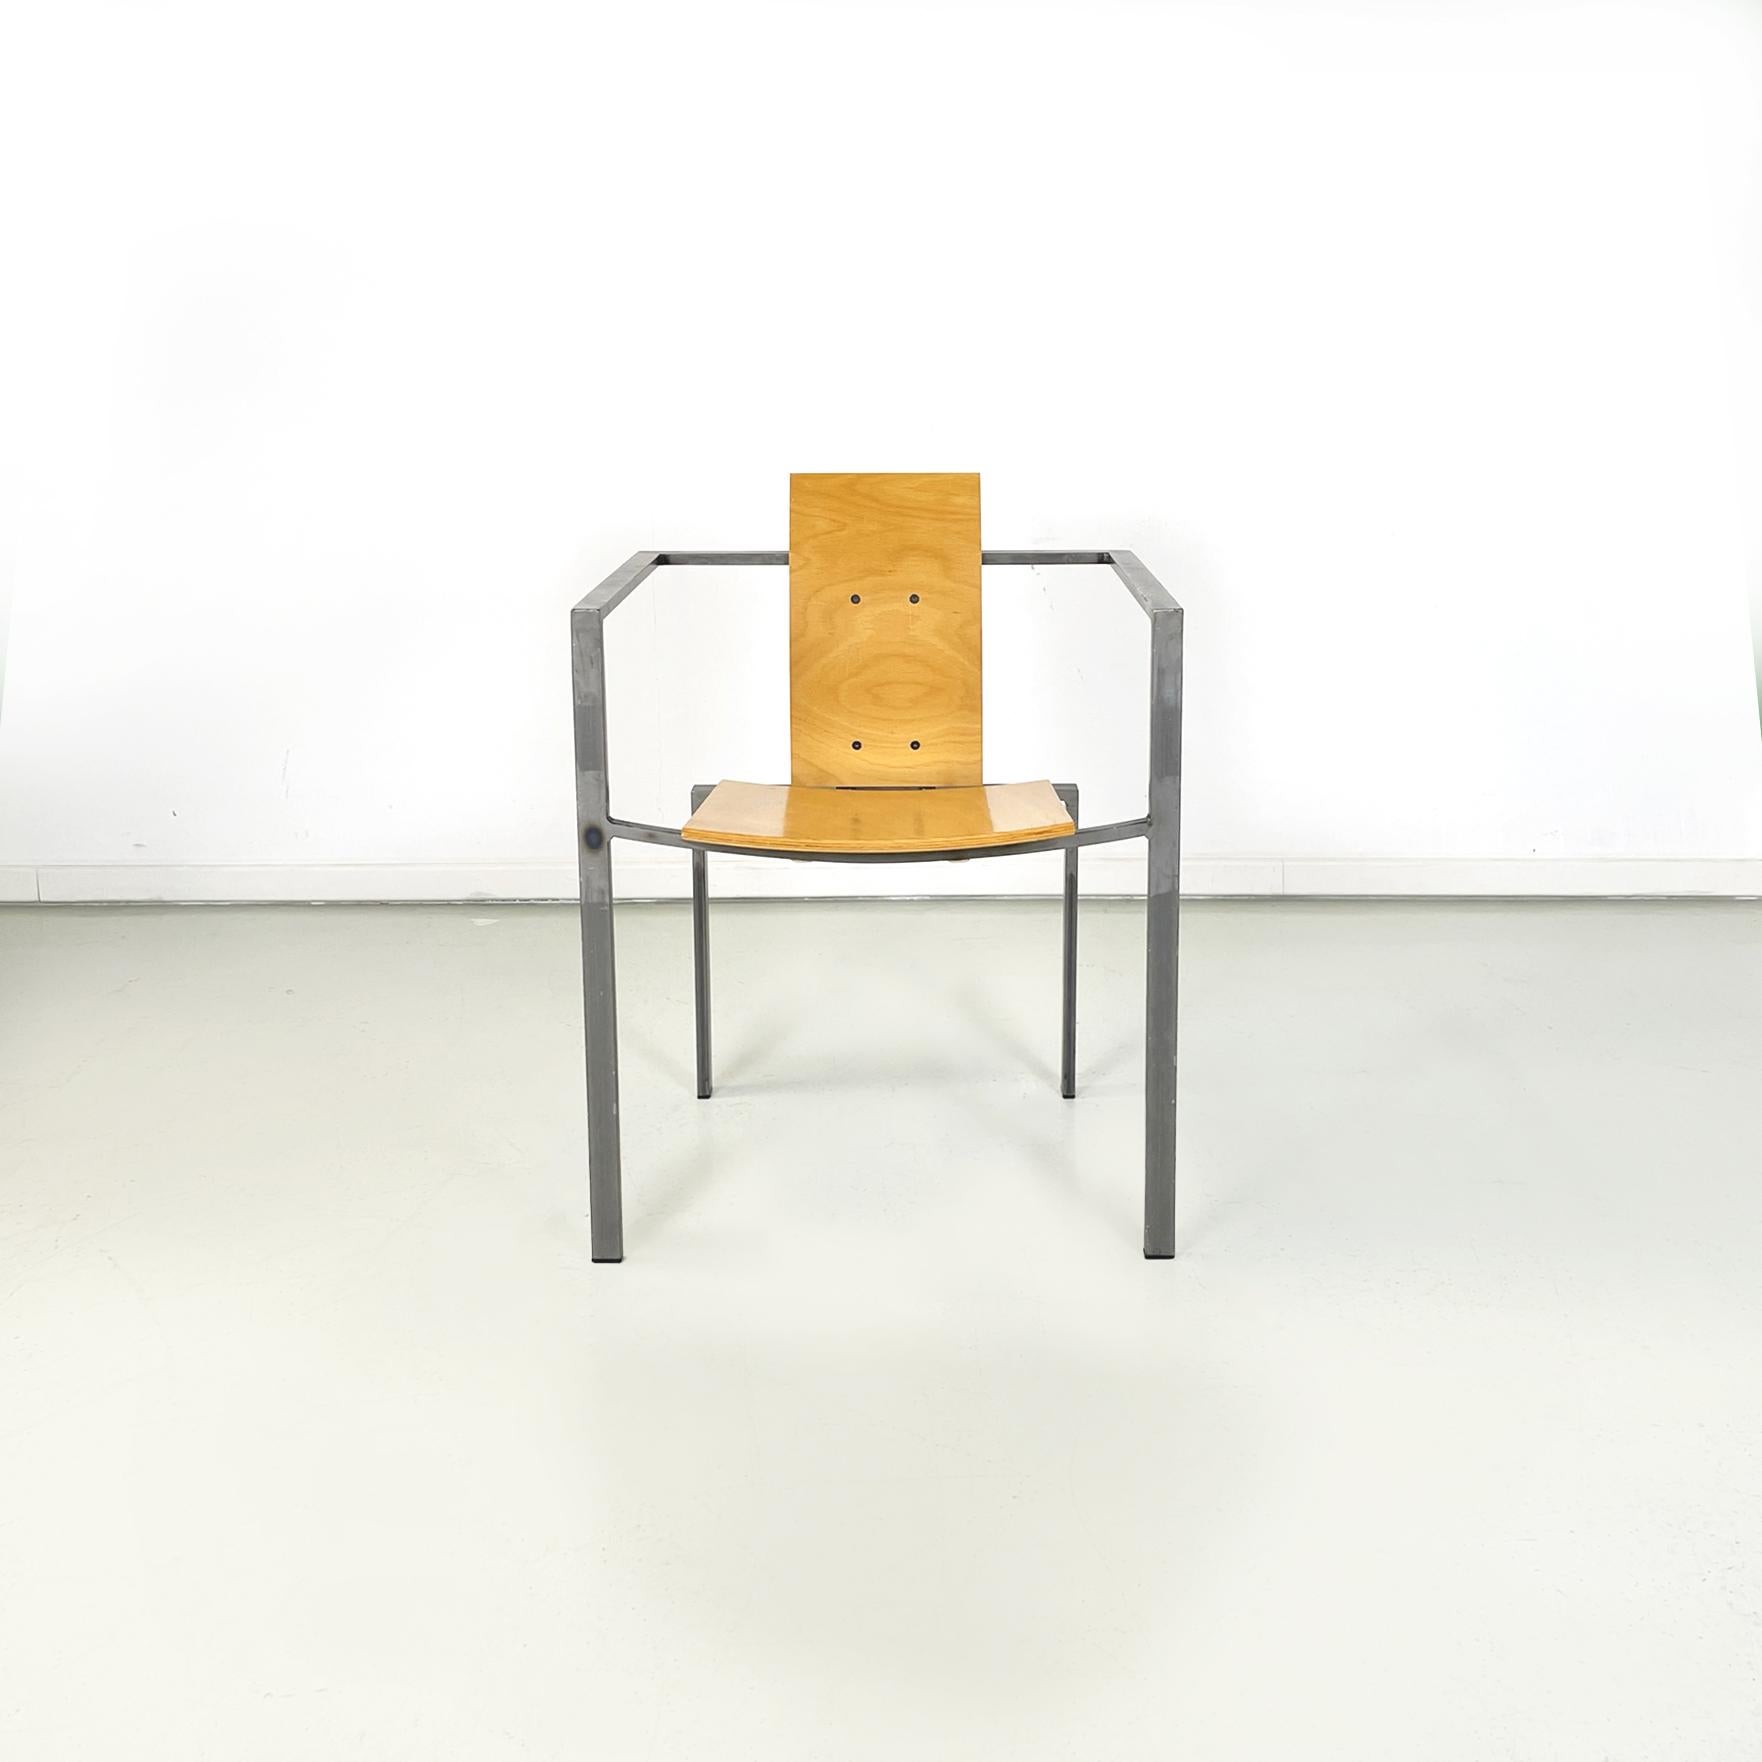 Chaise moderne allemande Squared en bois et métal par Karl-Friedrich Foster KKF, 1980
Chaise de salle à manger avec assise et dossier carrés en bois clair courbé. La structure à section carrée est en métal. Accoudoir présent.
Produit et conçu par